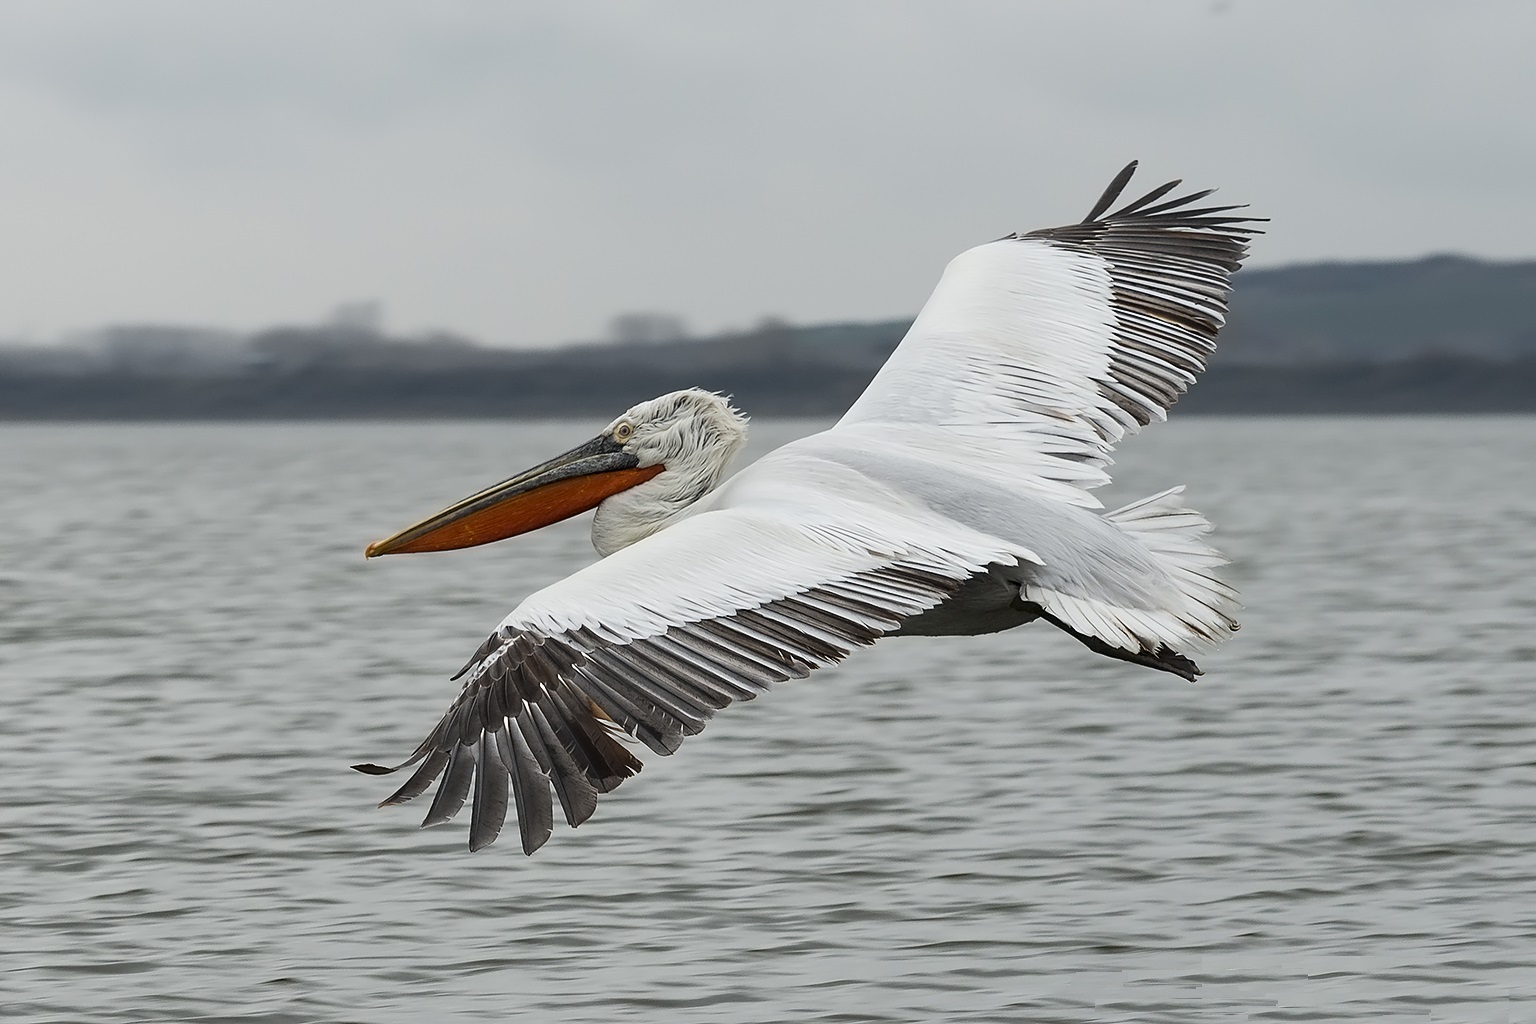 Pelican keriting dalam penerbangan